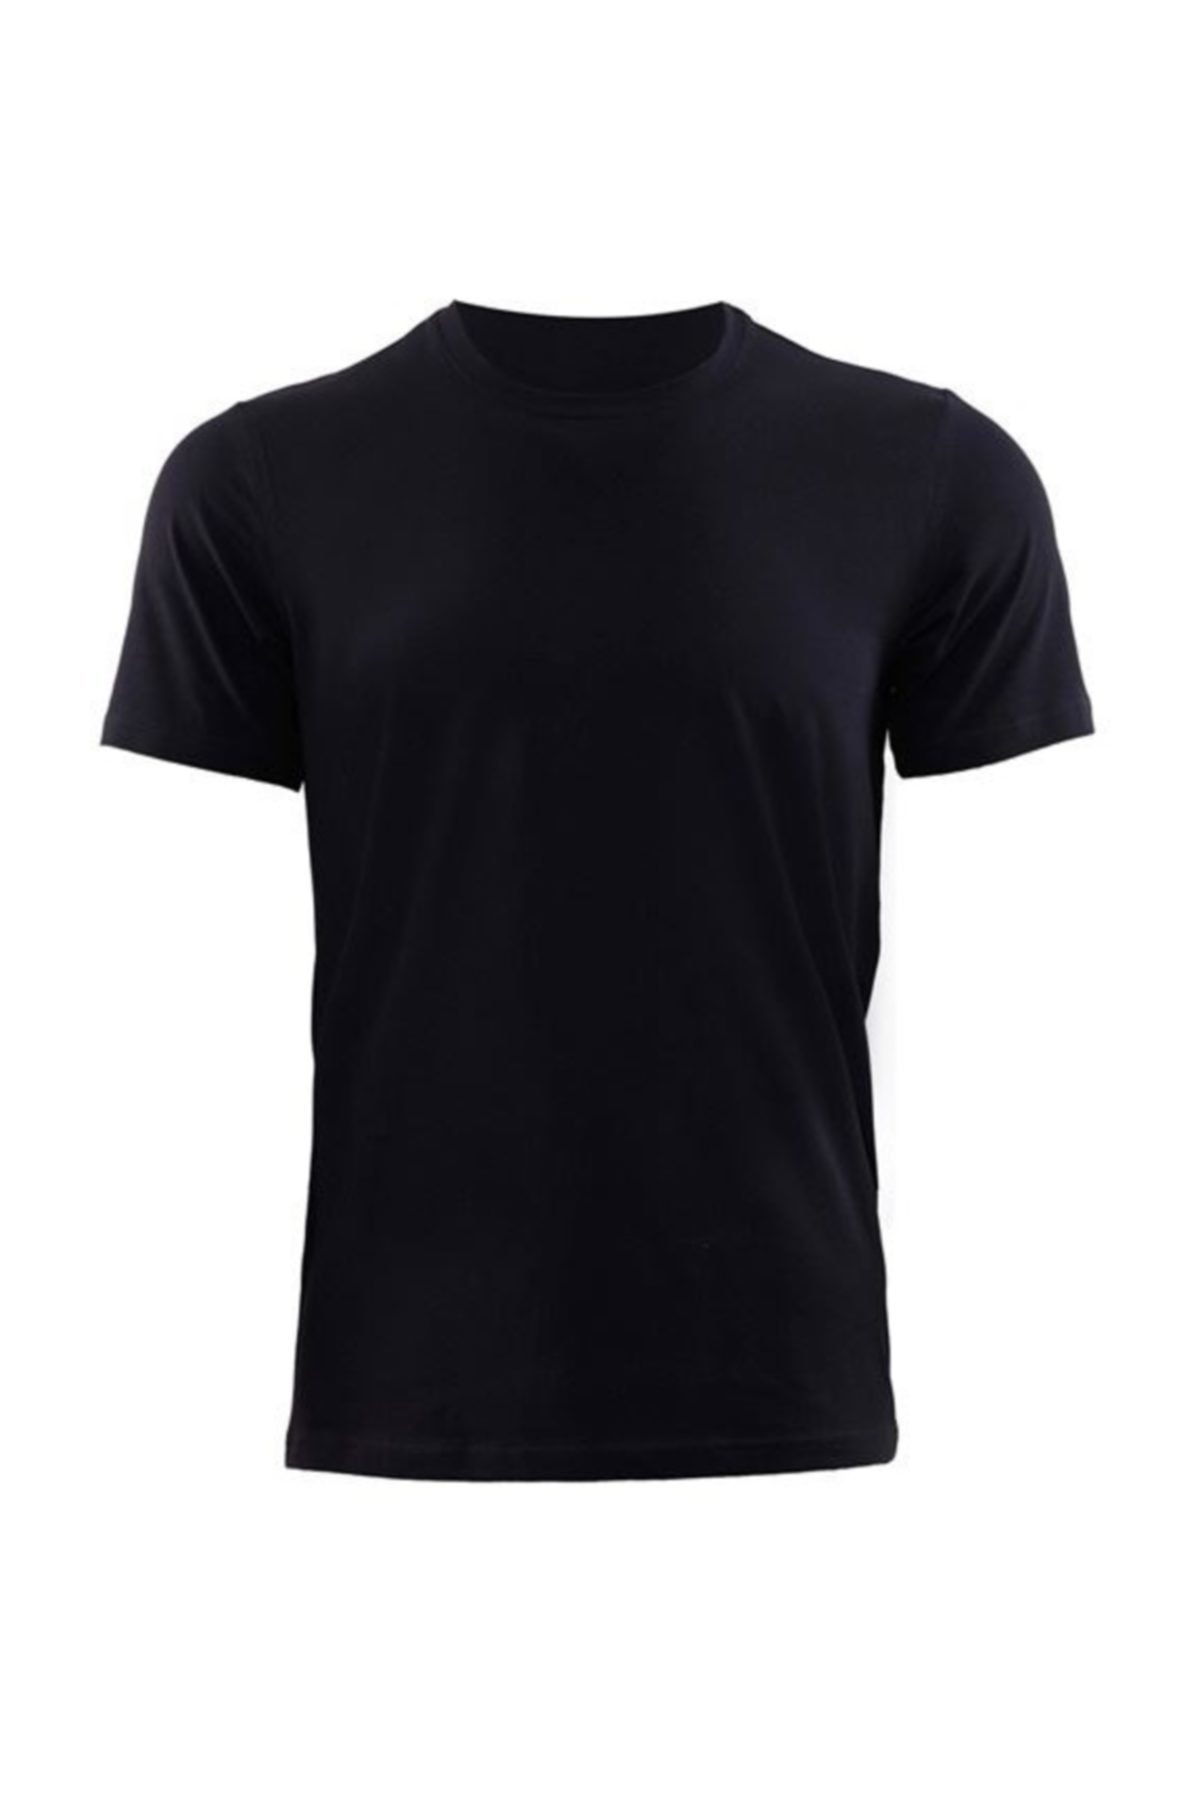 Blackspade Erkek Siyah Ultimate Stretch Pamuklu T-Shirt 9506